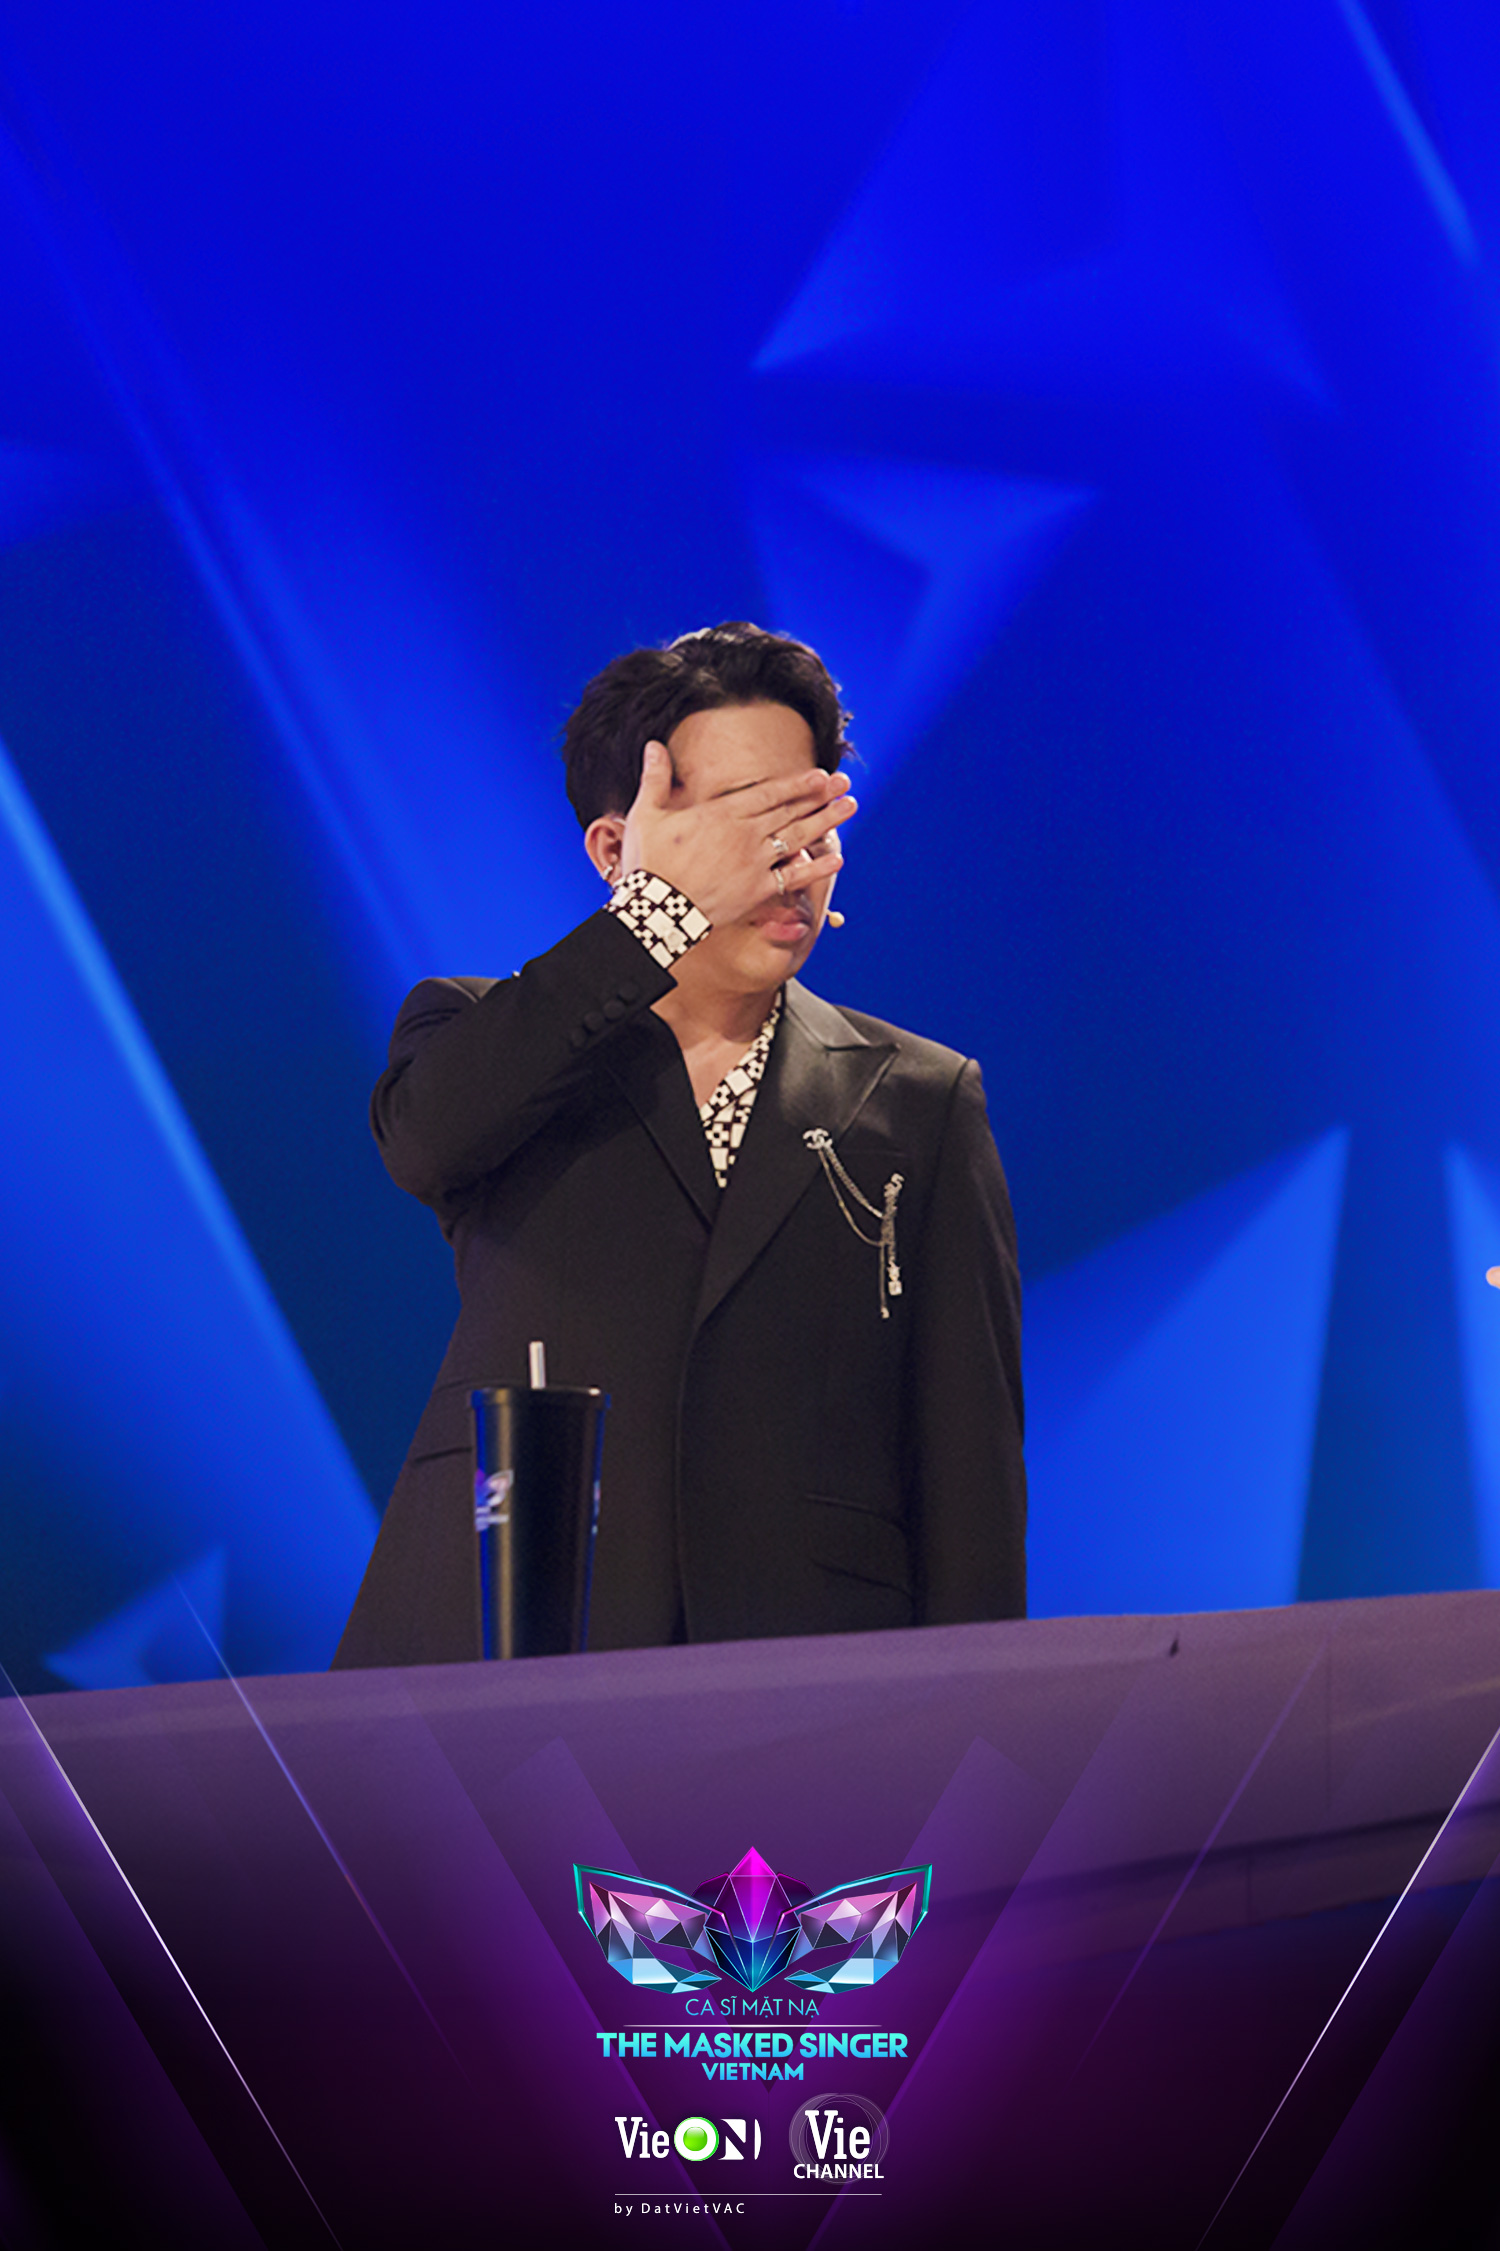 Không phải là MC, Trấn Thành bất ngờ “debut” vai trò cố vấn cho một chương trình tranh tài âm nhạc giữa các ca sĩ hàng đầu Việt Nam  - Ảnh 2.